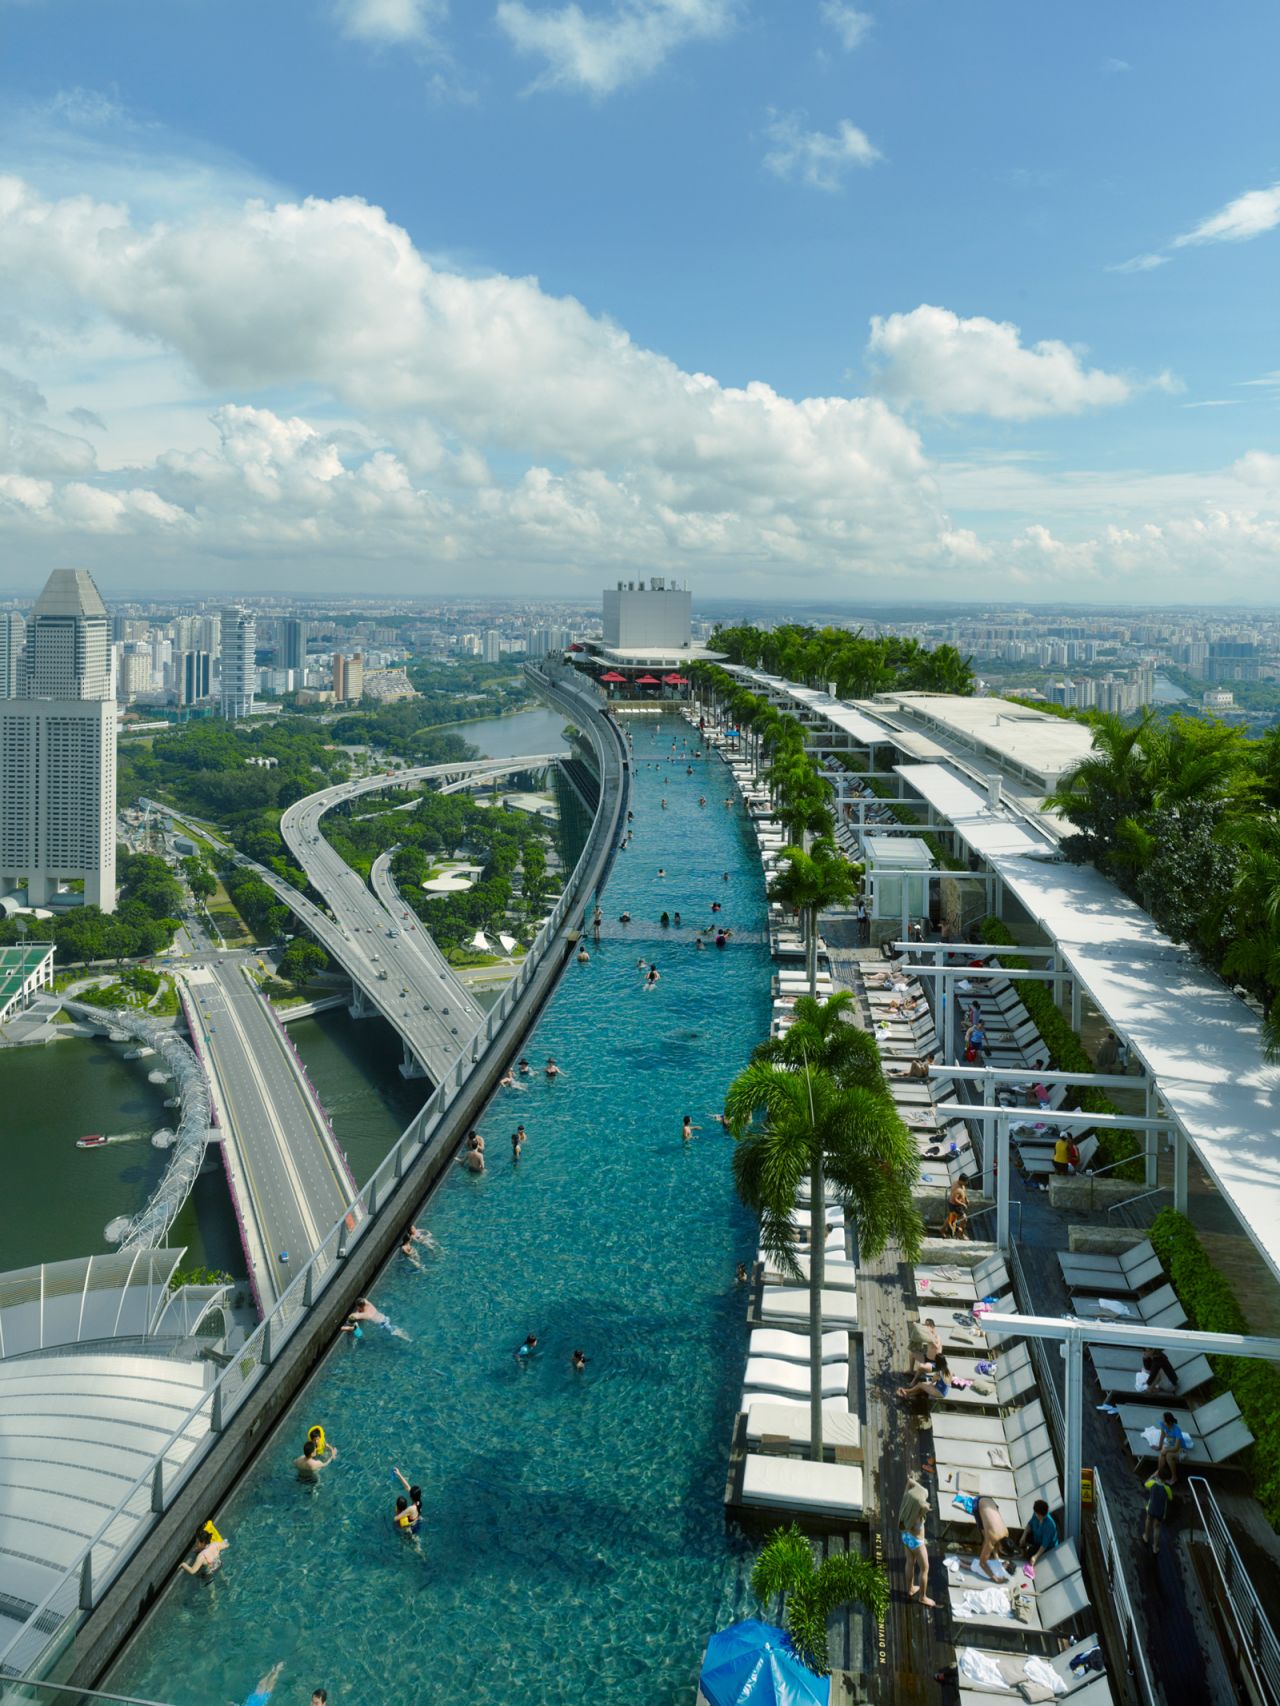 Moshie Safdie on Singapore architecture | CNN